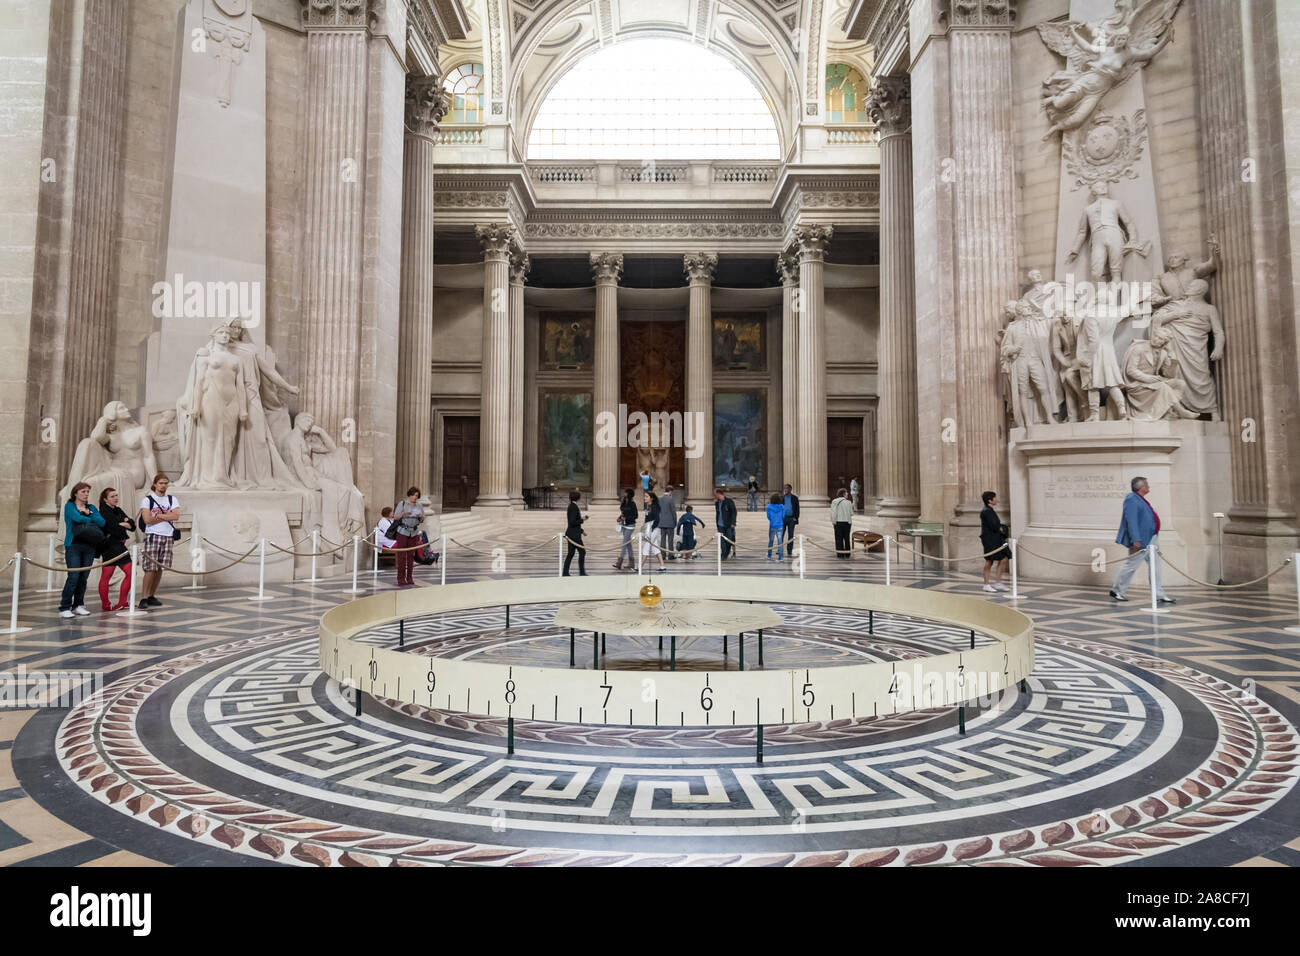 Belle vue panoramique sur le pendule de Foucault dans le célèbre mausolée Panthéon à Paris. C'est un appareil nommé d'après le physicien français Léon Foucault... Banque D'Images